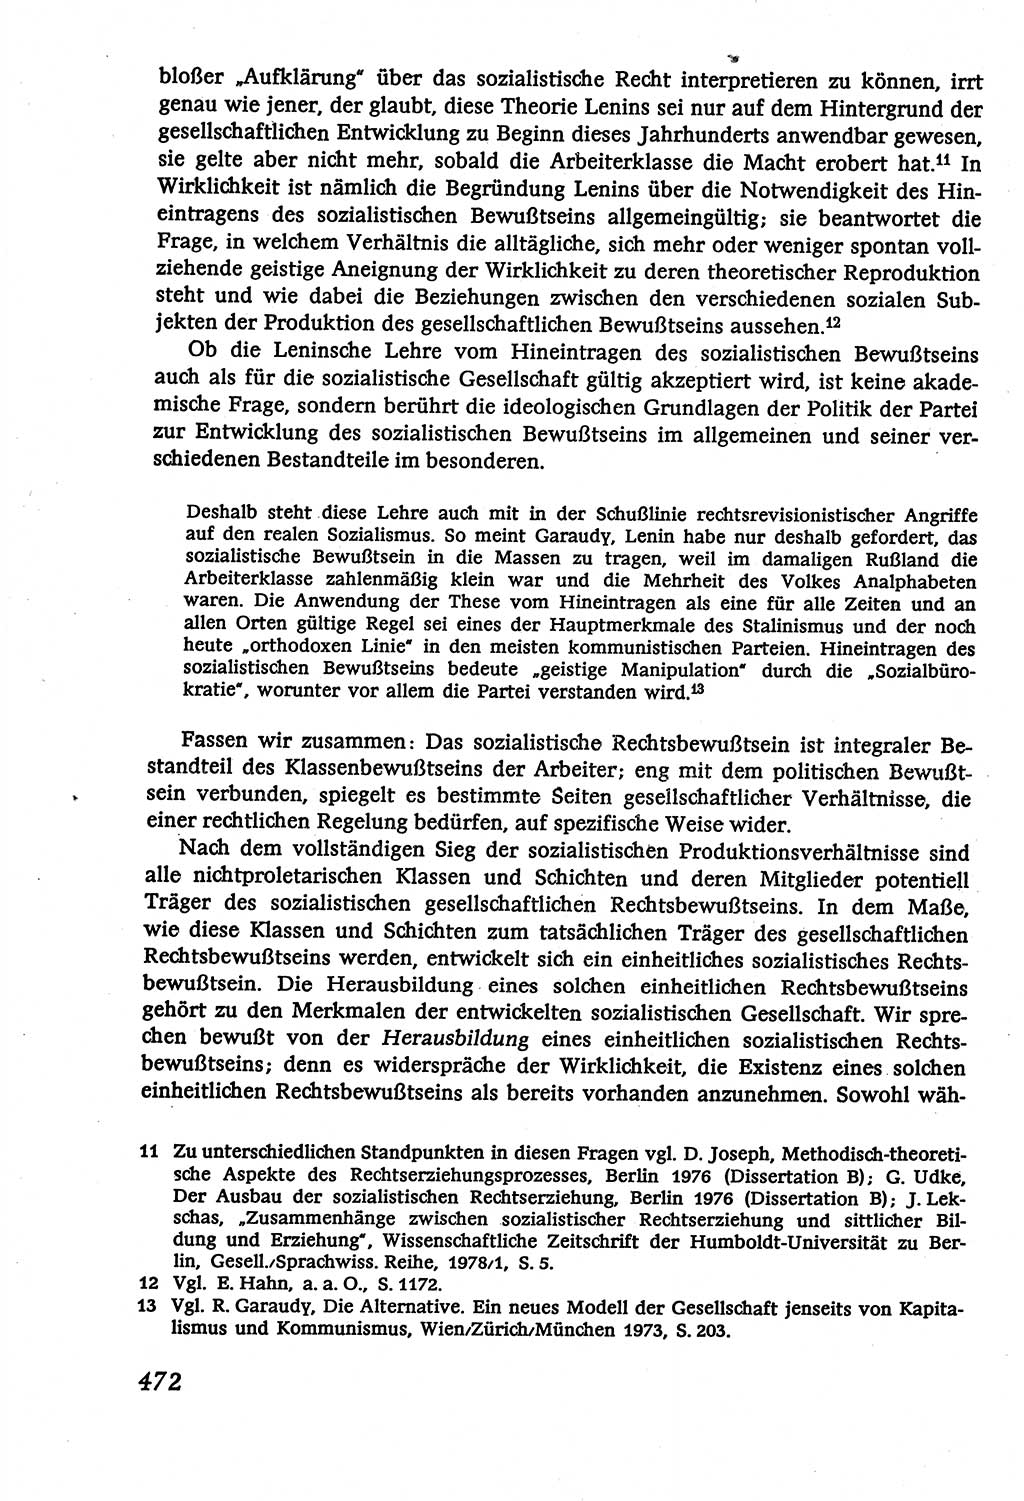 Marxistisch-leninistische (ML) Staats- und Rechtstheorie [Deutsche Demokratische Republik (DDR)], Lehrbuch 1980, Seite 472 (ML St.-R.-Th. DDR Lb. 1980, S. 472)